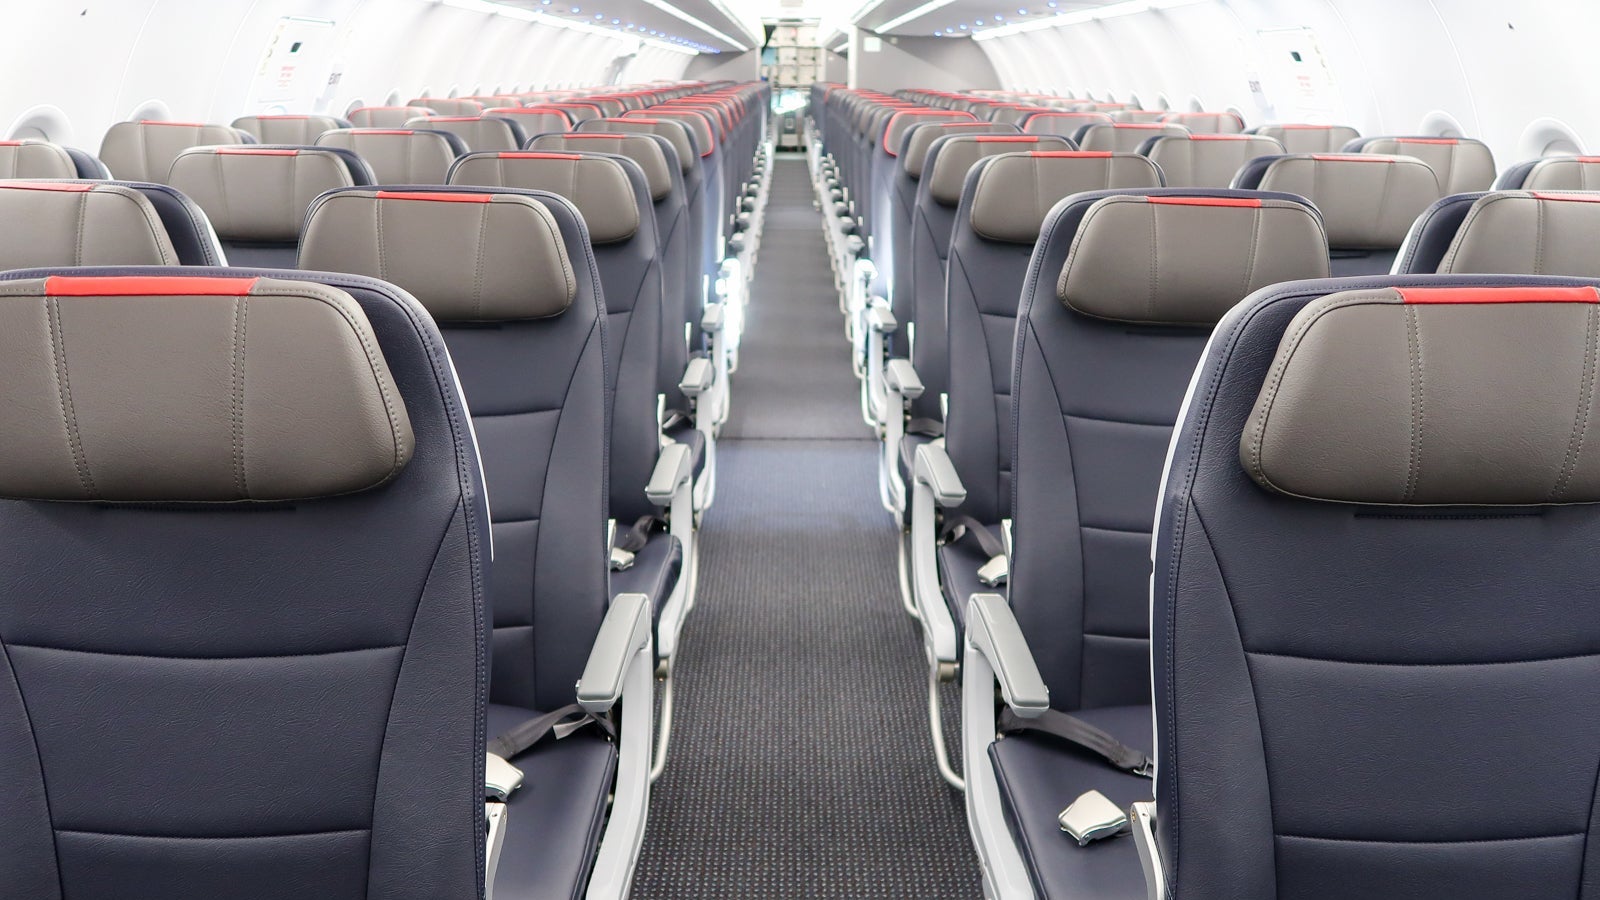 6 lý do tại sao bạn nên luôn ngồi ở ghế lối đi trên máy bay - 1